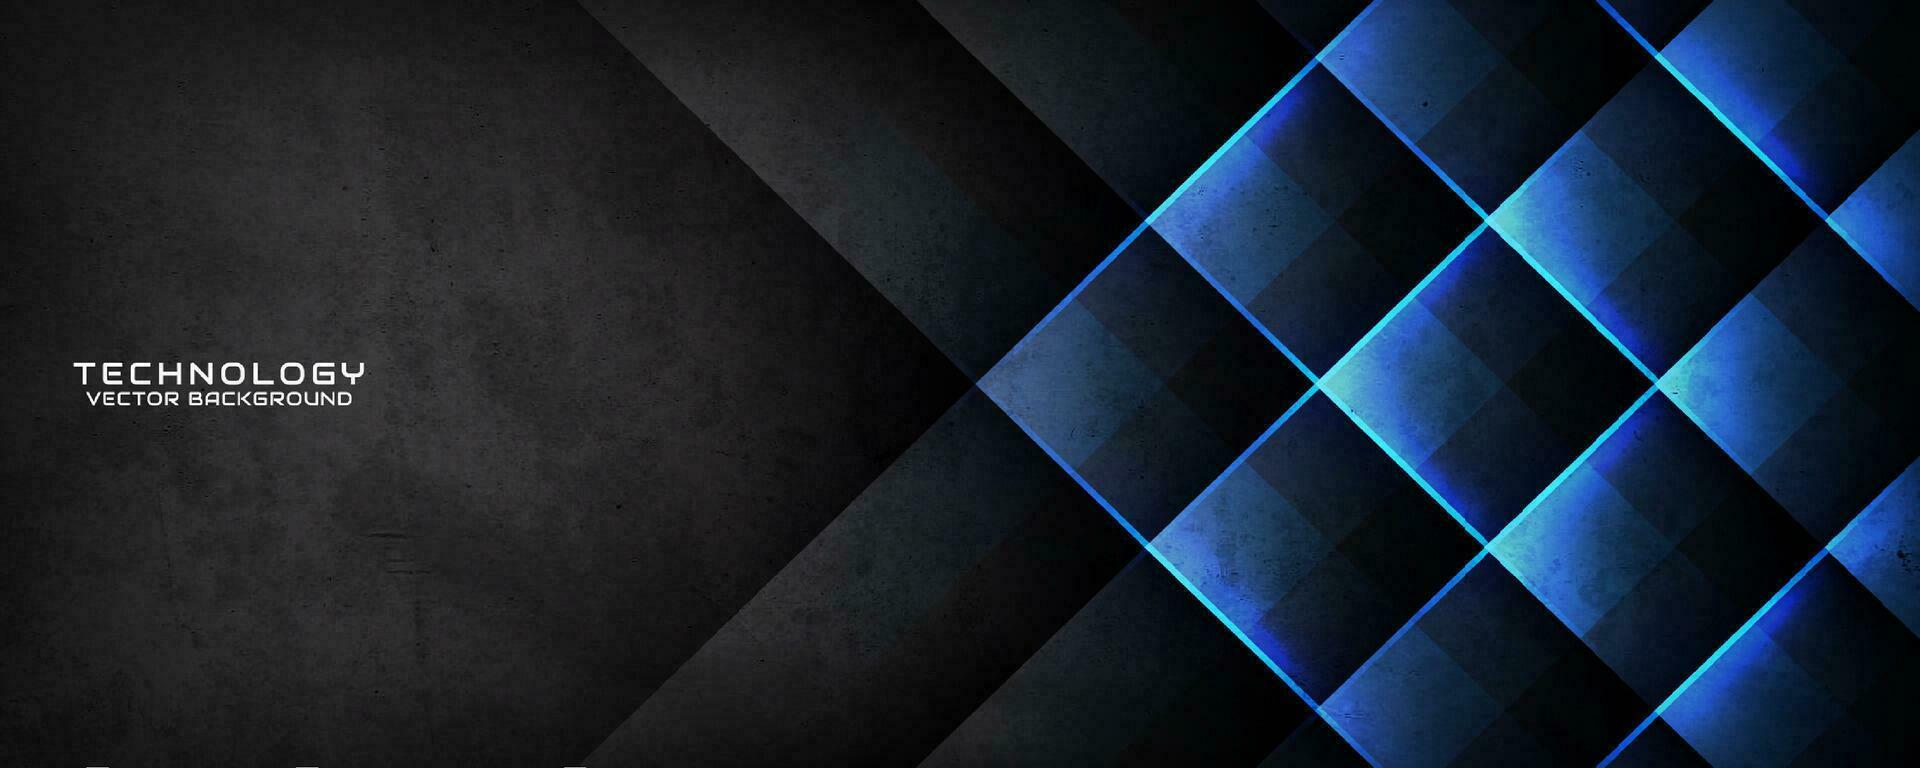 3d schwarz Techno abstrakt Hintergrund Überlappung Schicht auf dunkel Raum mit Blau Licht und Rau Grunge Wirkung. modern Grafik Design Element ausgeschnitten Stil Konzept zum Banner, Flyer, Karte, oder Broschüre Startseite vektor